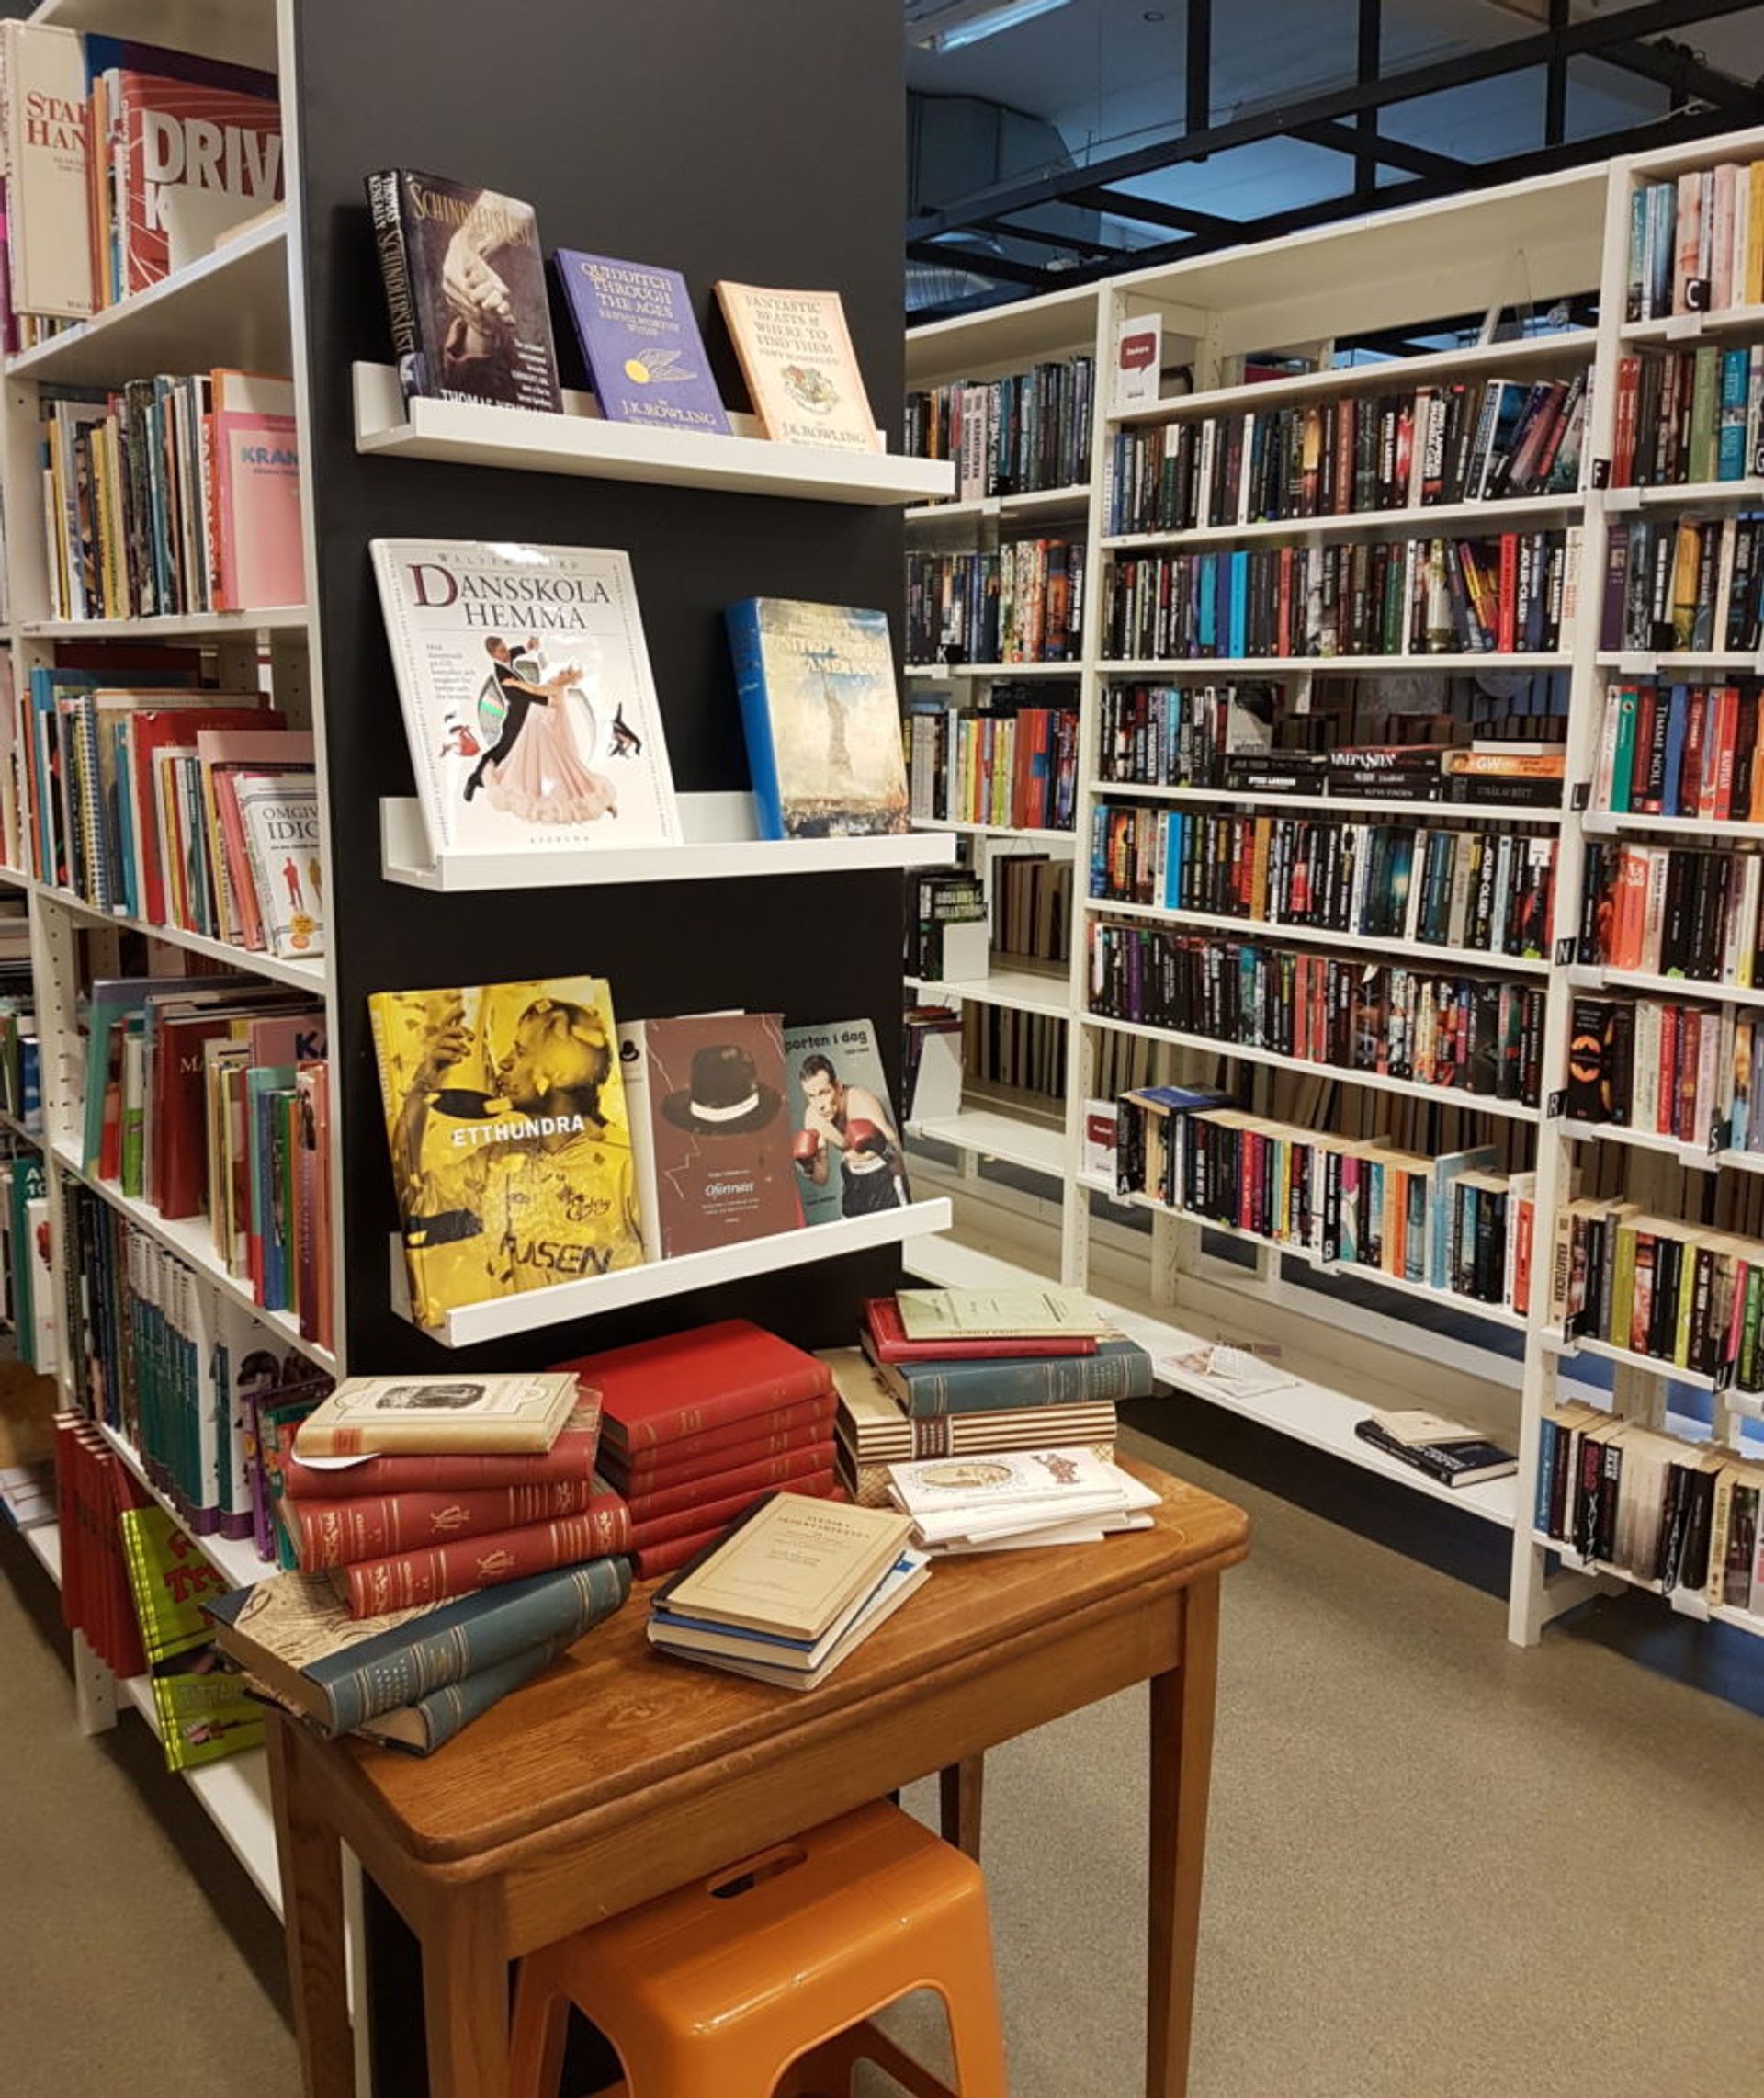 Shelves of books.